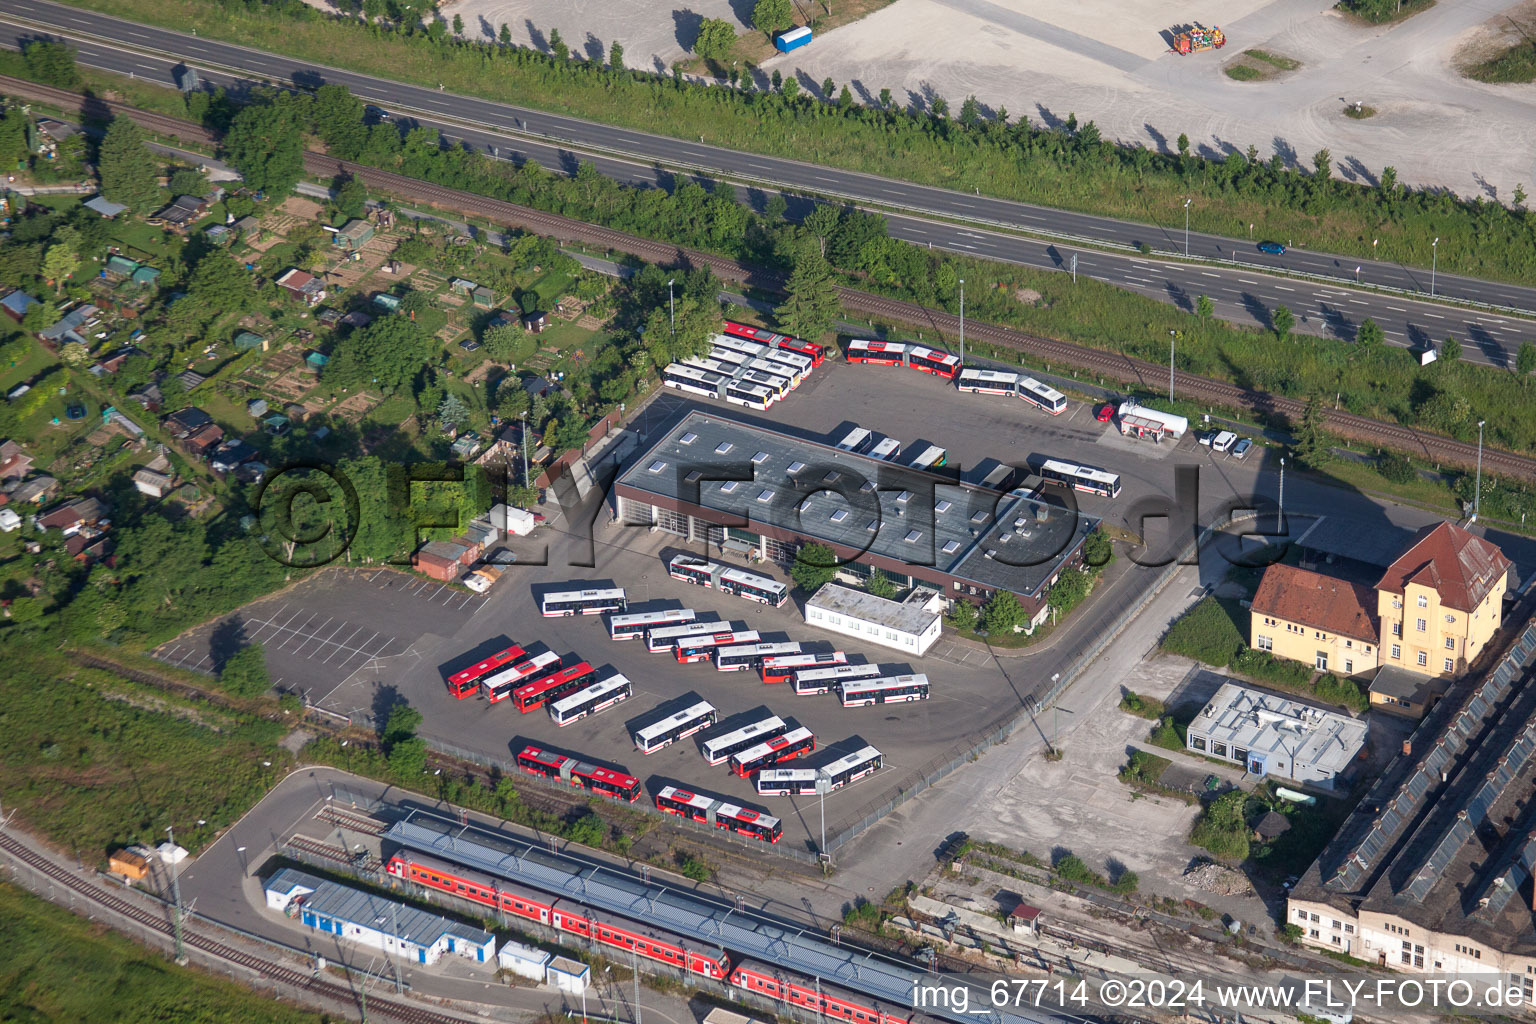 Vue aérienne de Transport local et dépôt de bus de la société de transport municipale BRG Stuttgart GmbH dans le quartier de Derendingen à Tübingen dans le département Bade-Wurtemberg, Allemagne